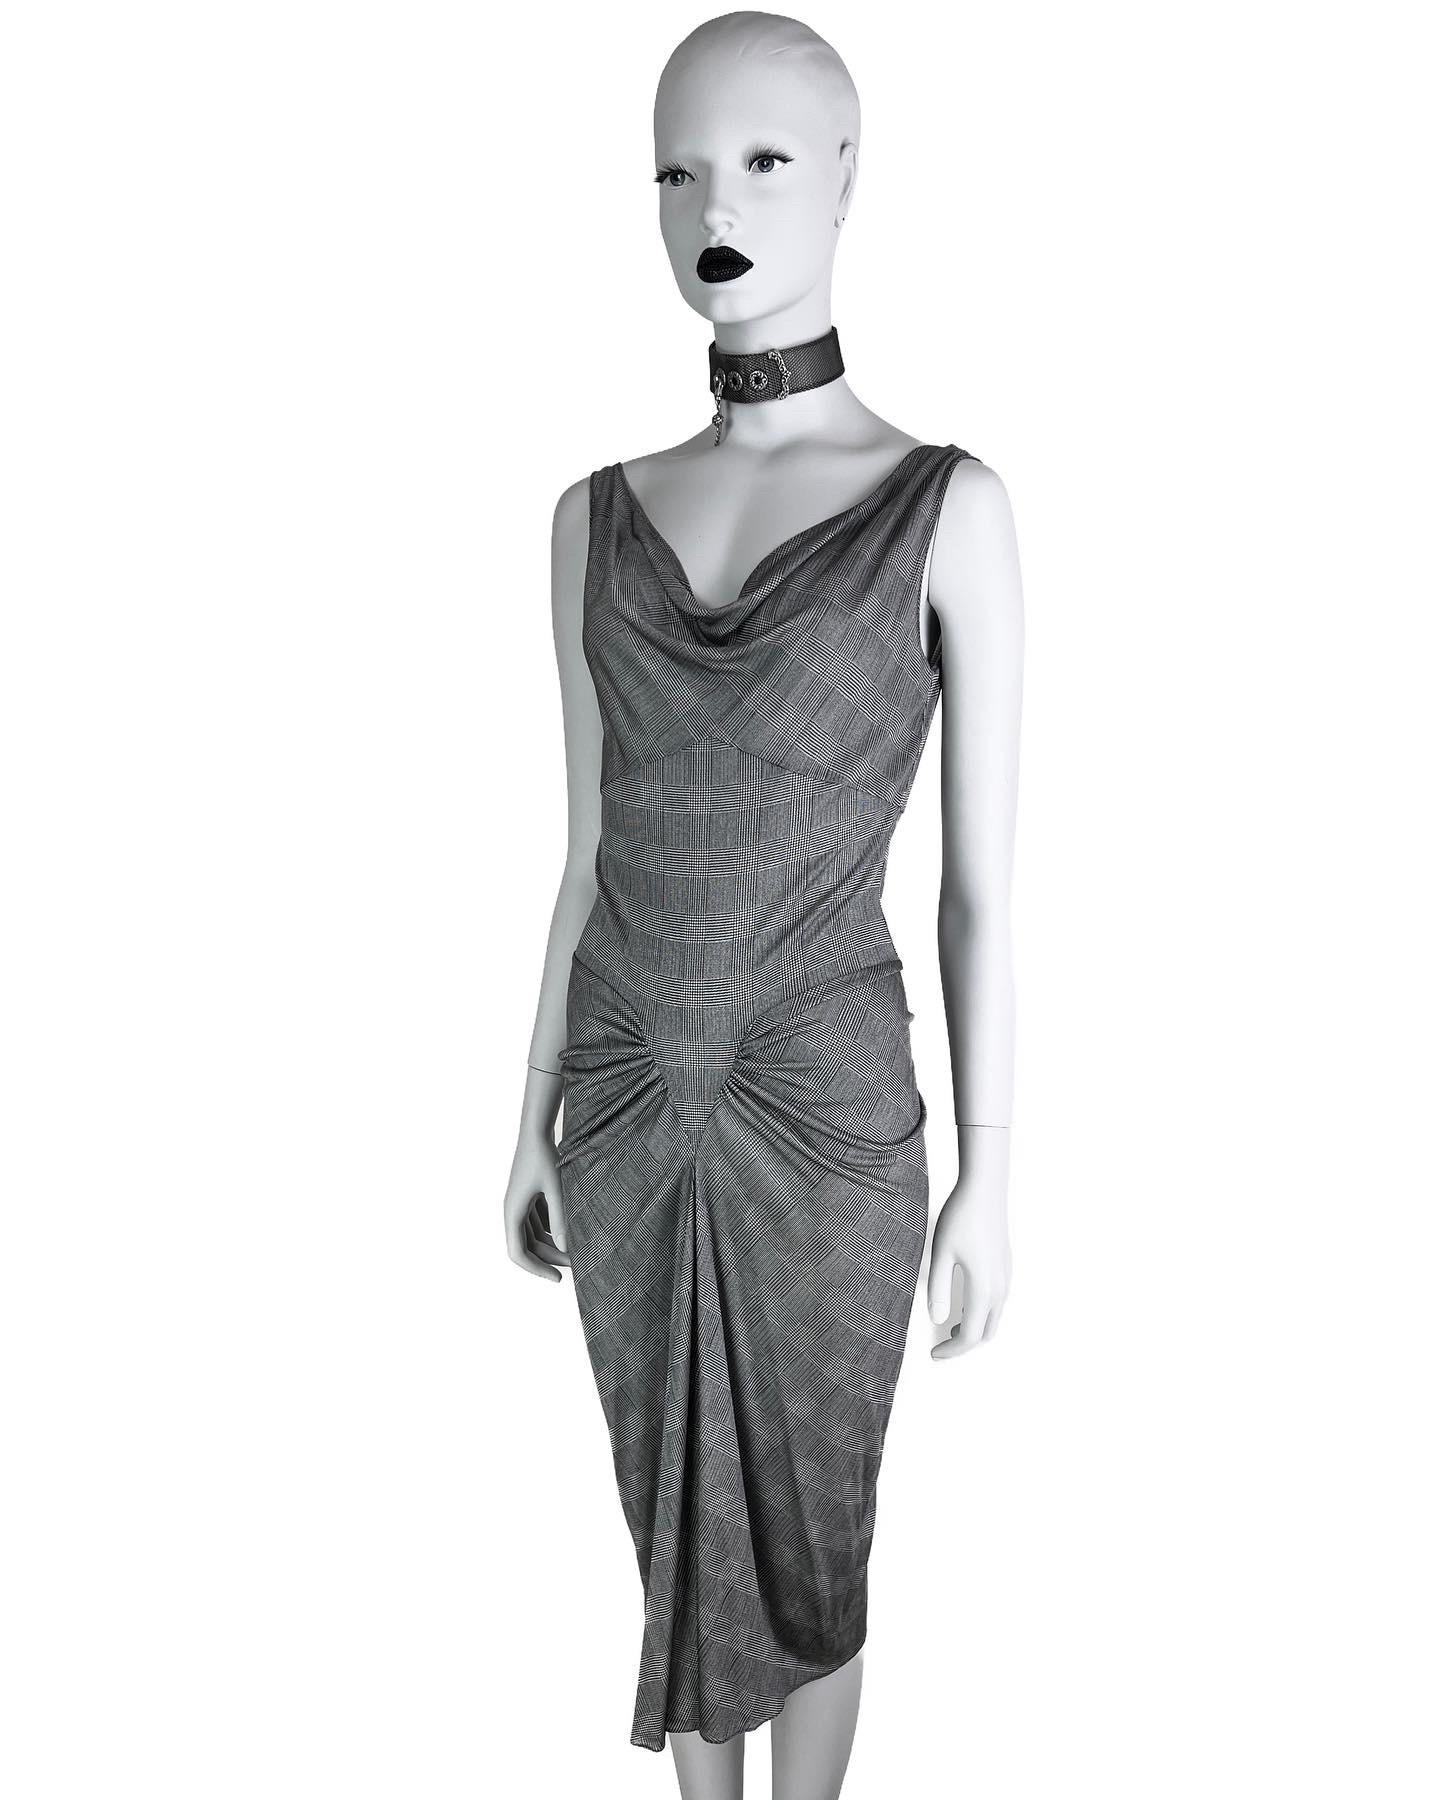 Ein atemberaubendes Kleid aus 100 % Seidenjersey aus der Frühjahrssaison 2000 mit schmeichelhaftem Schnitt und Drapierungen. Dieser Stil ist sehr begehrt, ein ähnliches Modell wurde auf der Couture-Schau im Frühjahr 1999 präsentiert. 

Größe FR 40,